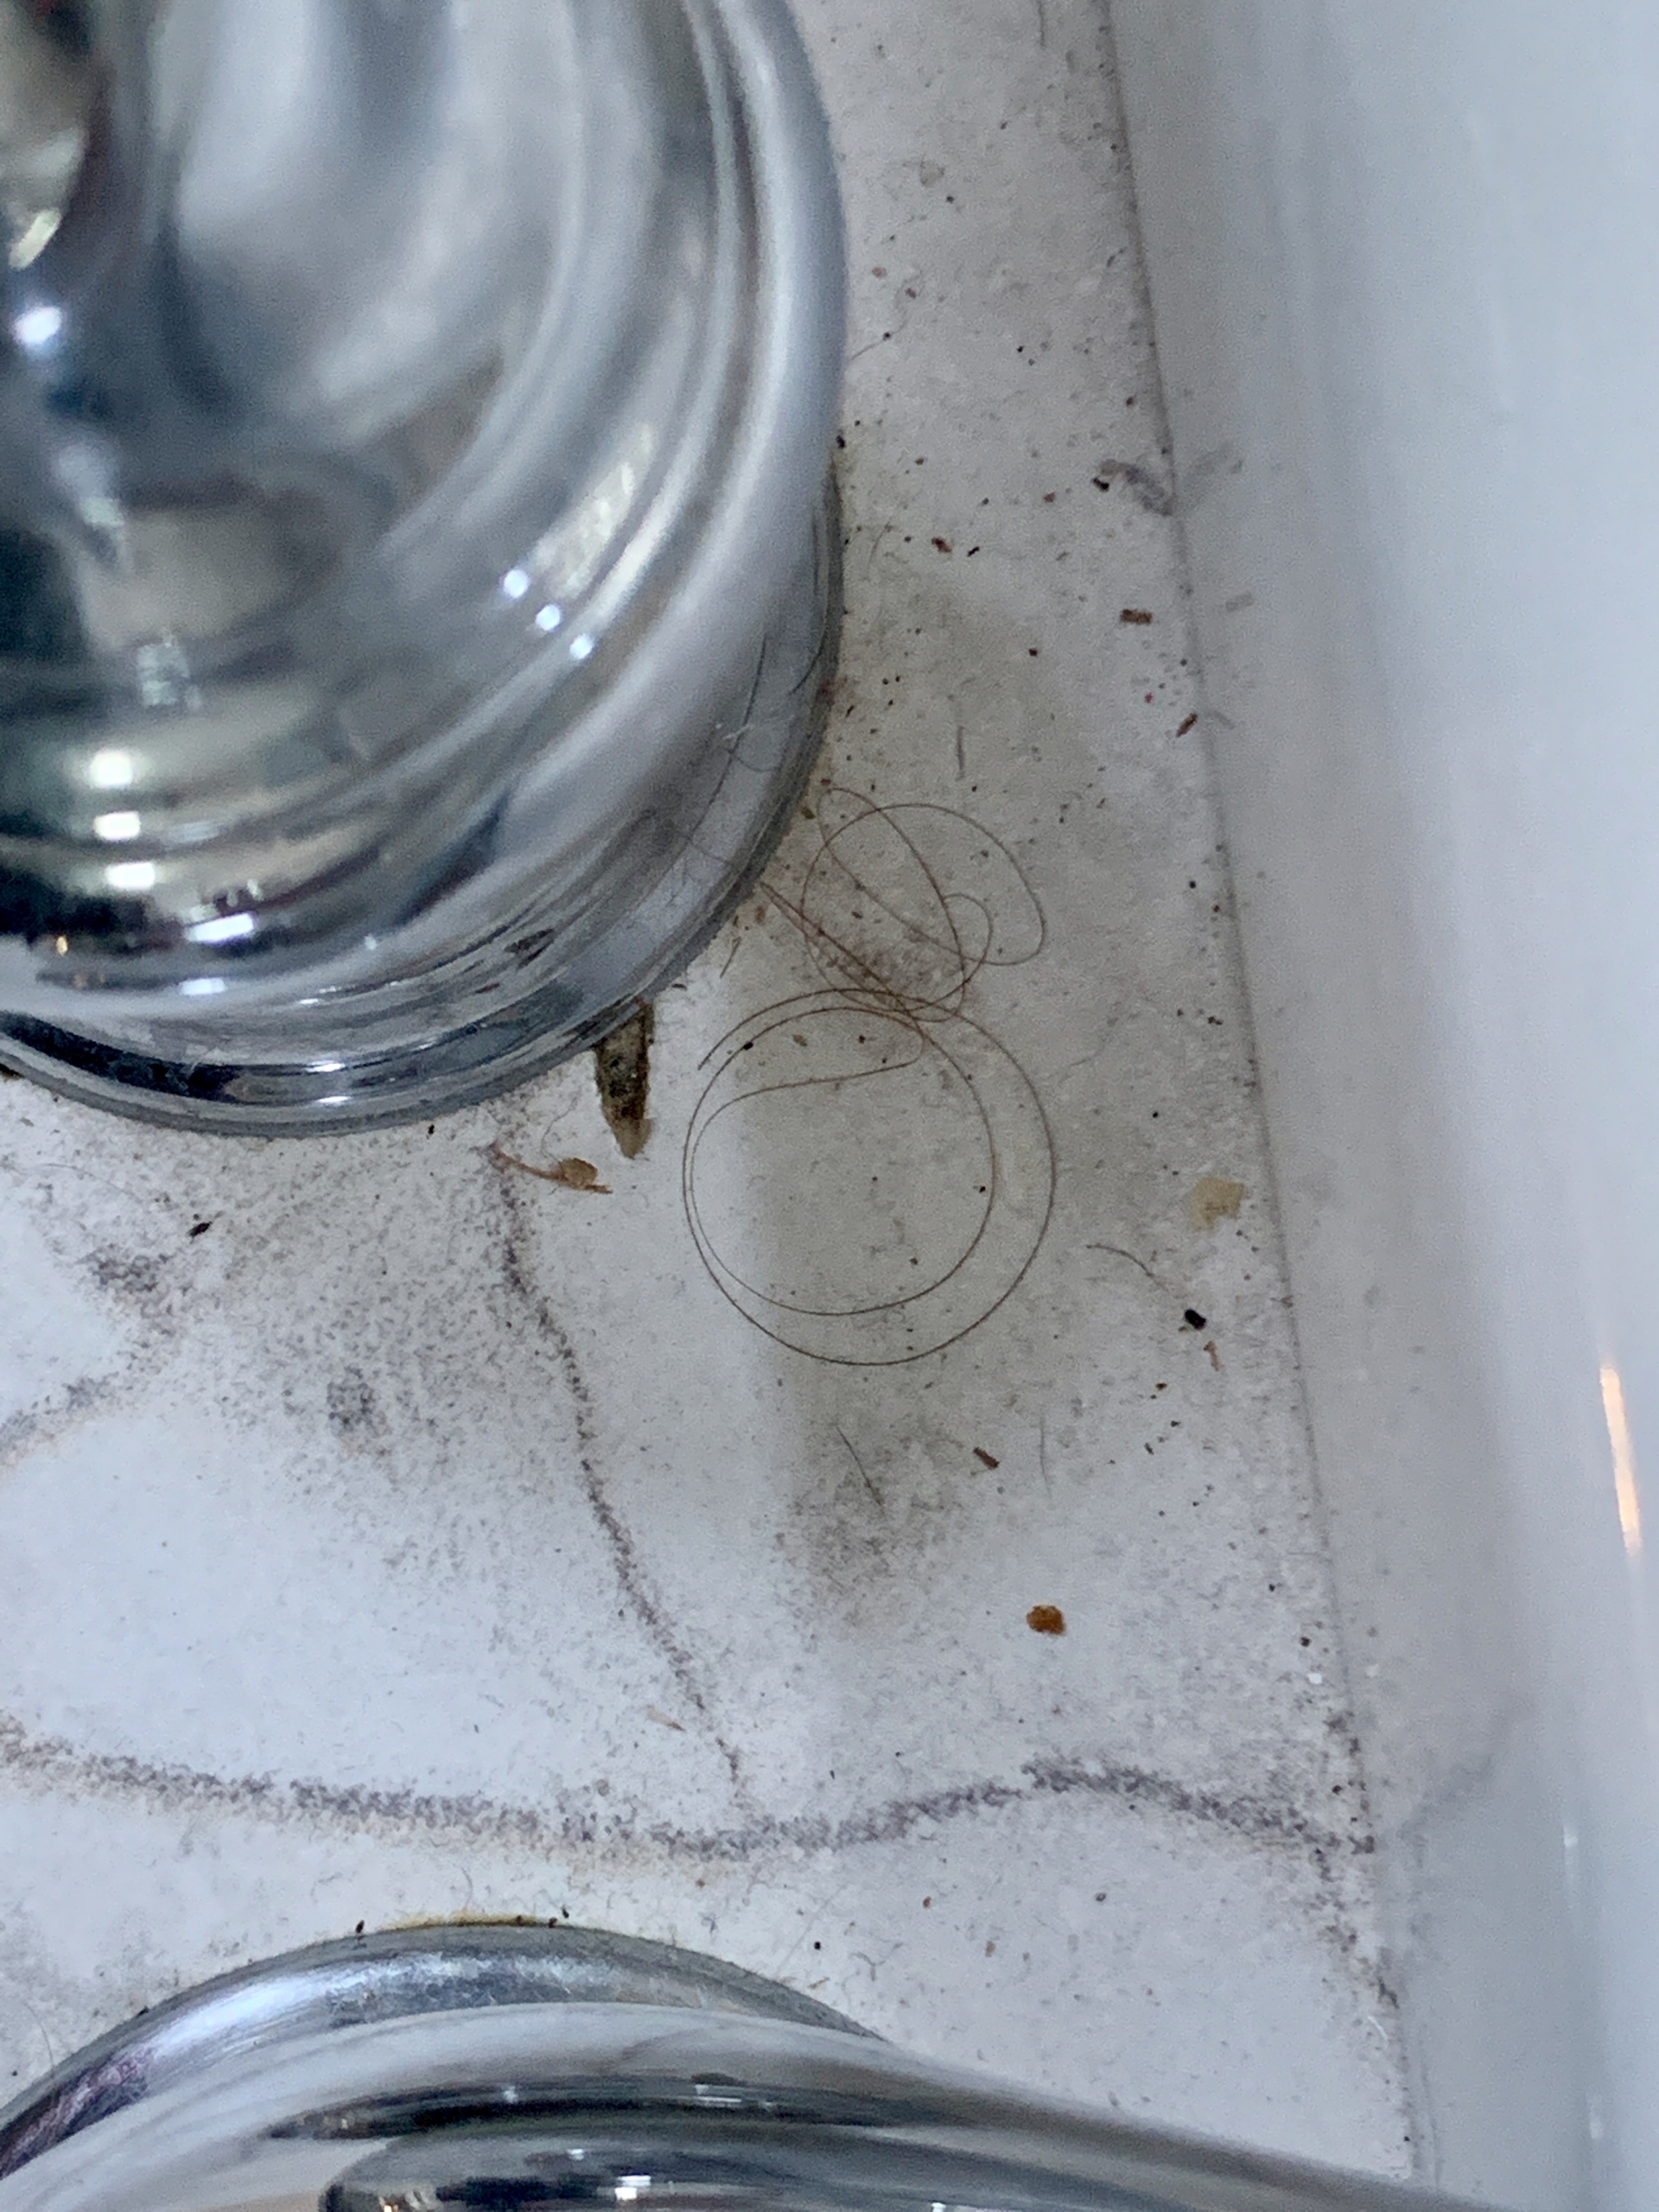 filthy bathroom sink using airbnb